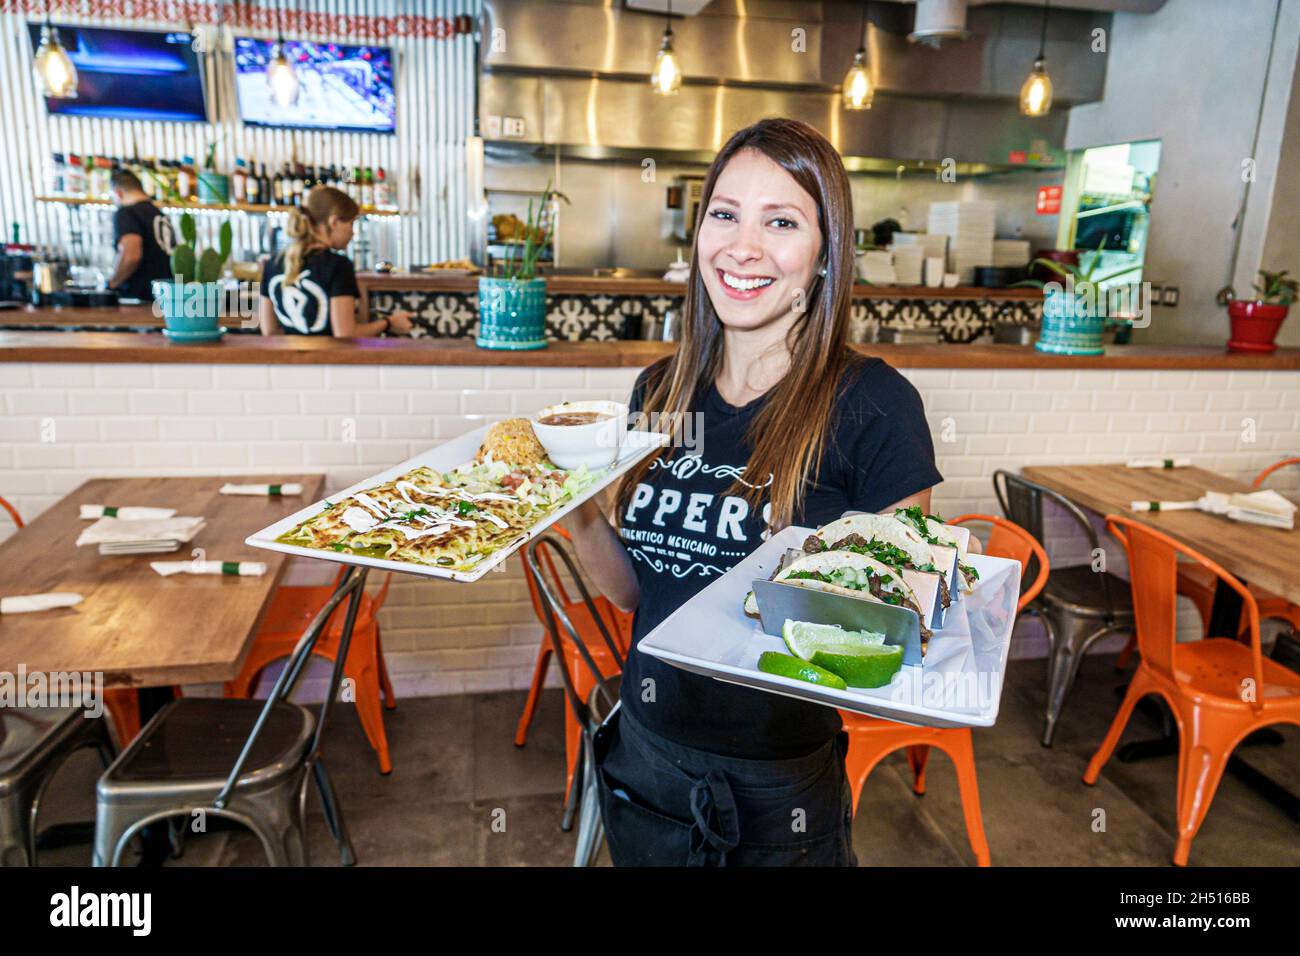 Miami Beach, Florida, Pepper's authentischer Mexikaner, Tex-Mex-Restaurant, hispanisches Mädchen weiblicher Teenager, Bedienung der Kellnerin, die Tacos Enchiladas arbeitet Stockfoto